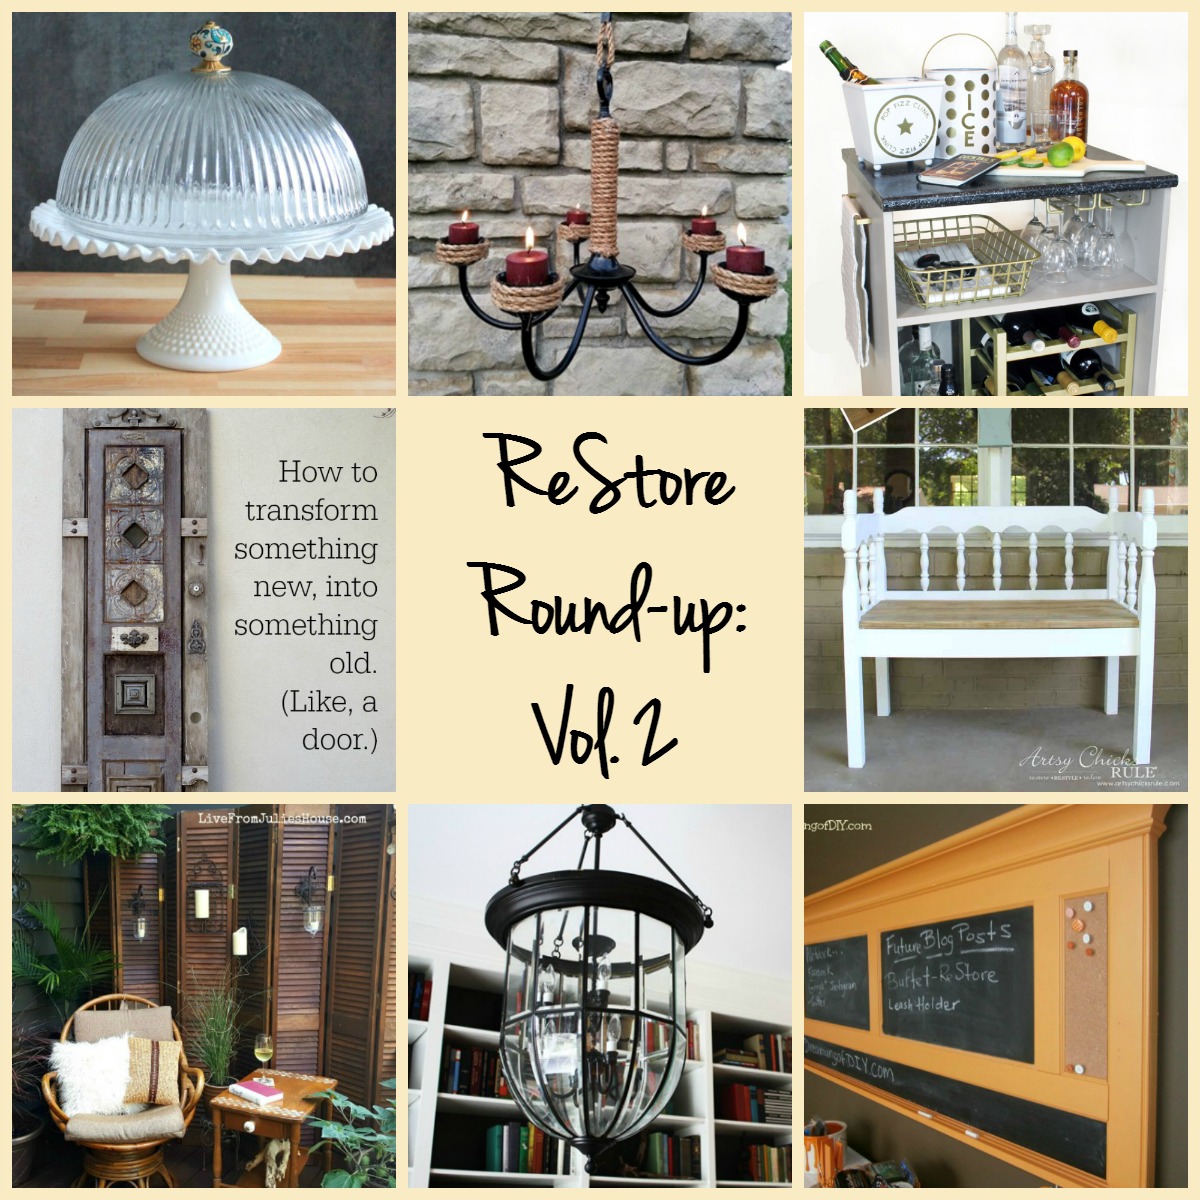 ReStore Round-up: Vol. 2